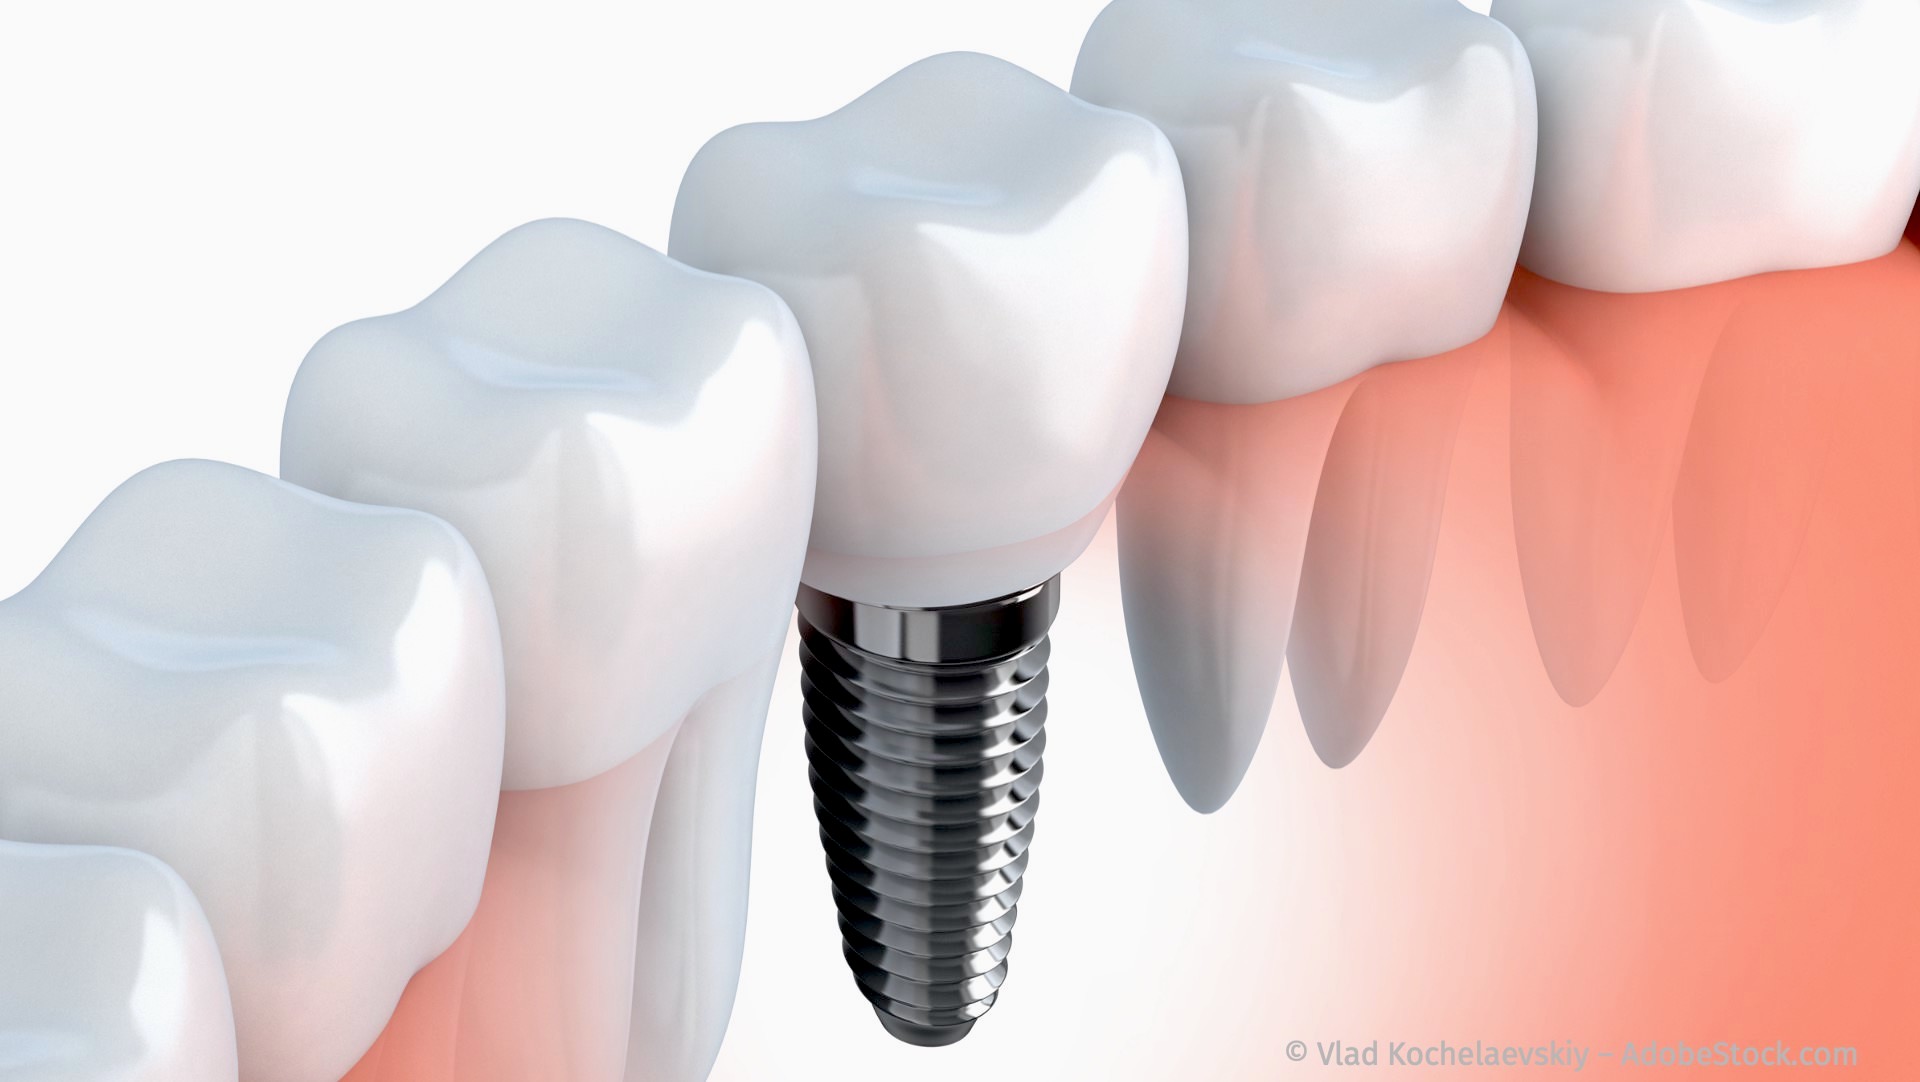 Zahnimplantate zum Ersatz fehlender Zähne